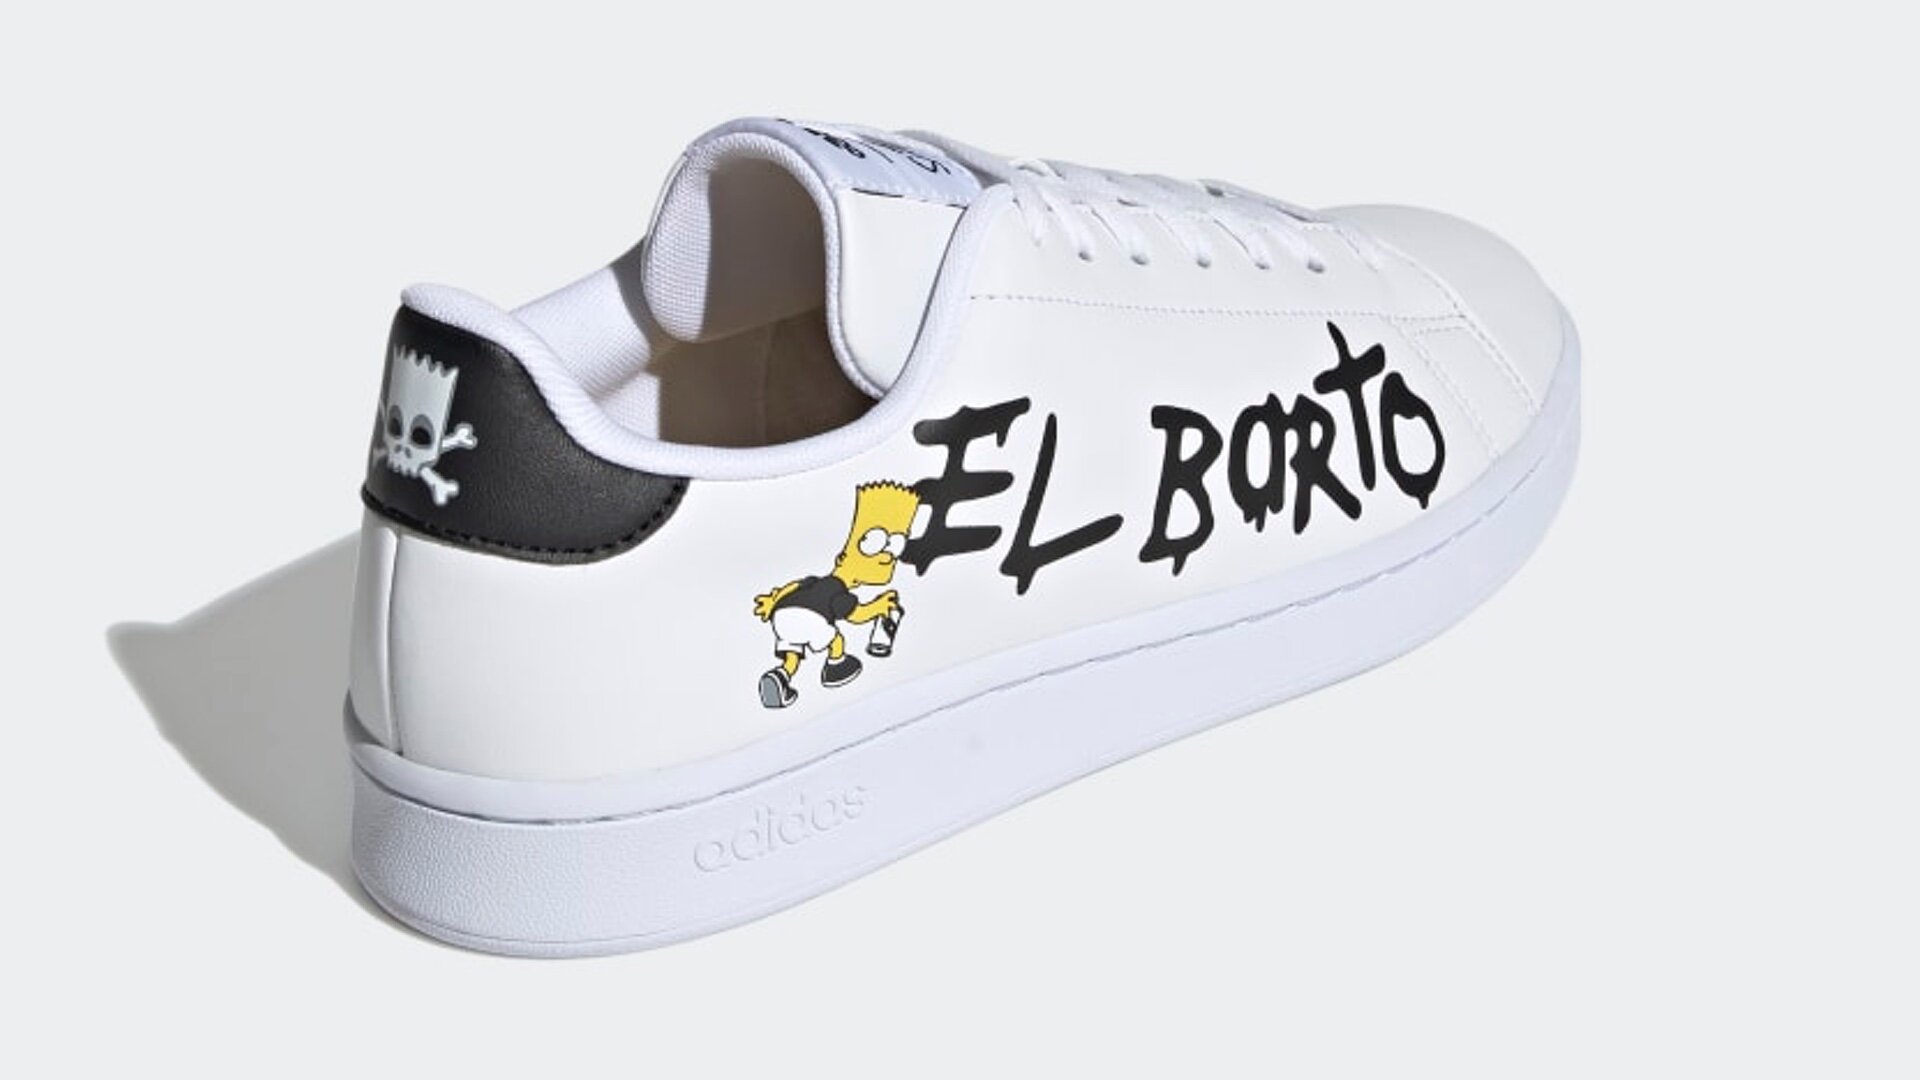 Адидас симпсон. El Barto adidas кроссовки. Адидас симпсоны кроссовки. Кроссовки адидас the Simpsons. Adidas Simpsons кроссовки el Barto.